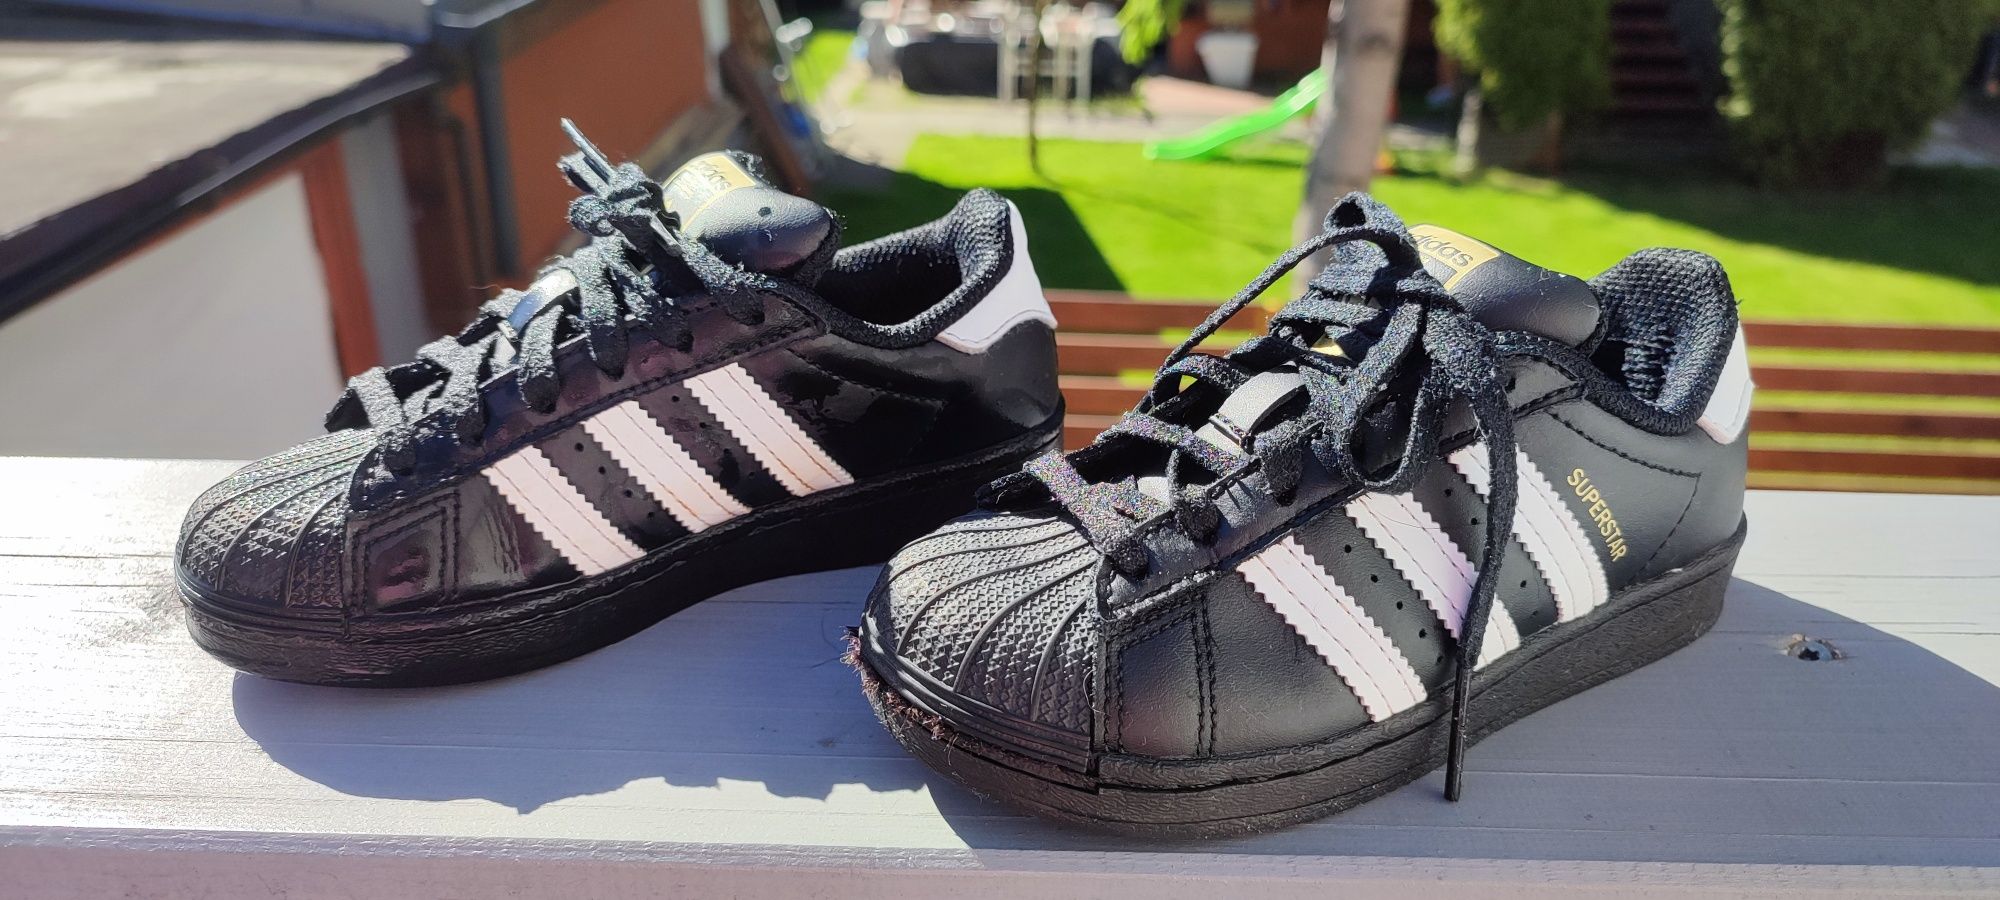 Buty dla chłopca i dziewczynki firmy Adidas rozmiar 29